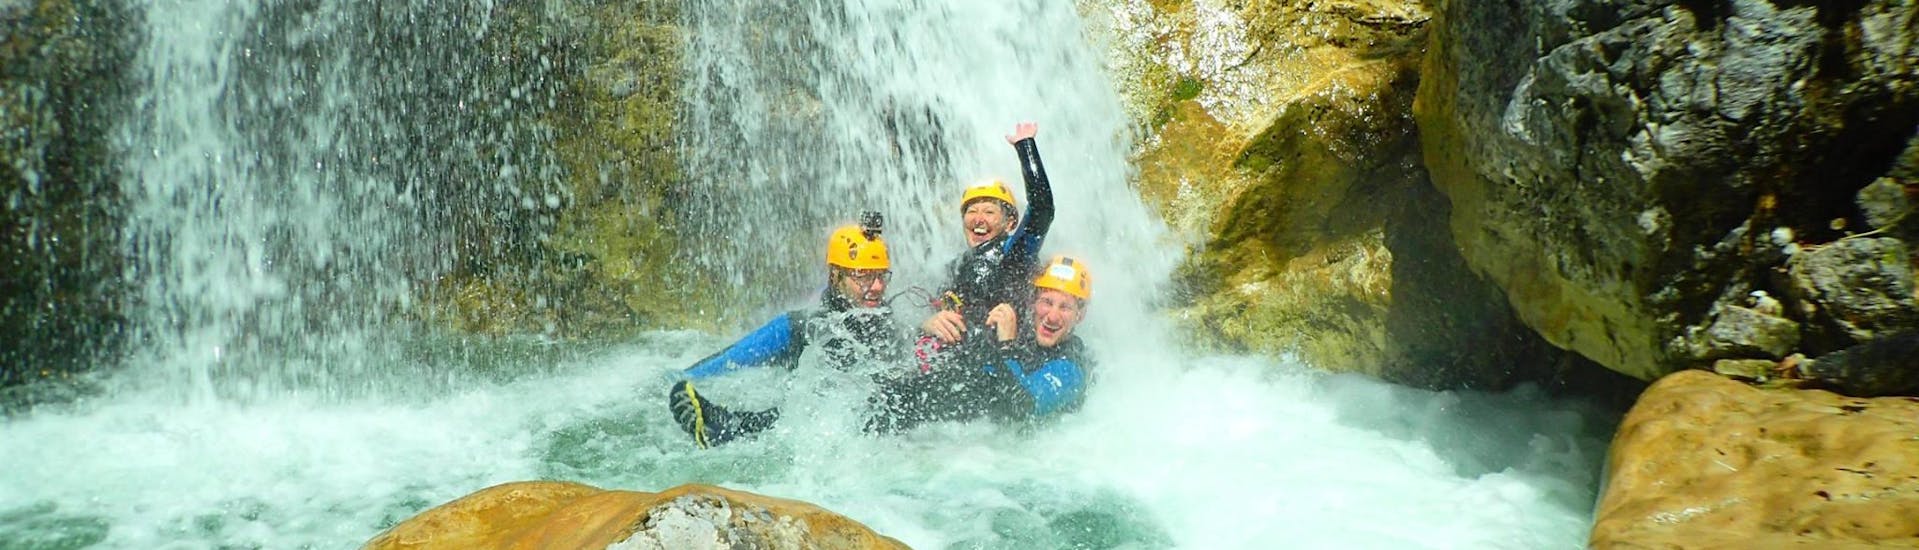 Drei Freunde genießen ein erfrischendes Bad unter einem Wasserfall, nachdem sie die anspruchsvollen Abseilpassagen des Ultimate Canyoning im Altersbach mit Torrent Outdoor Experience gemeistert haben.